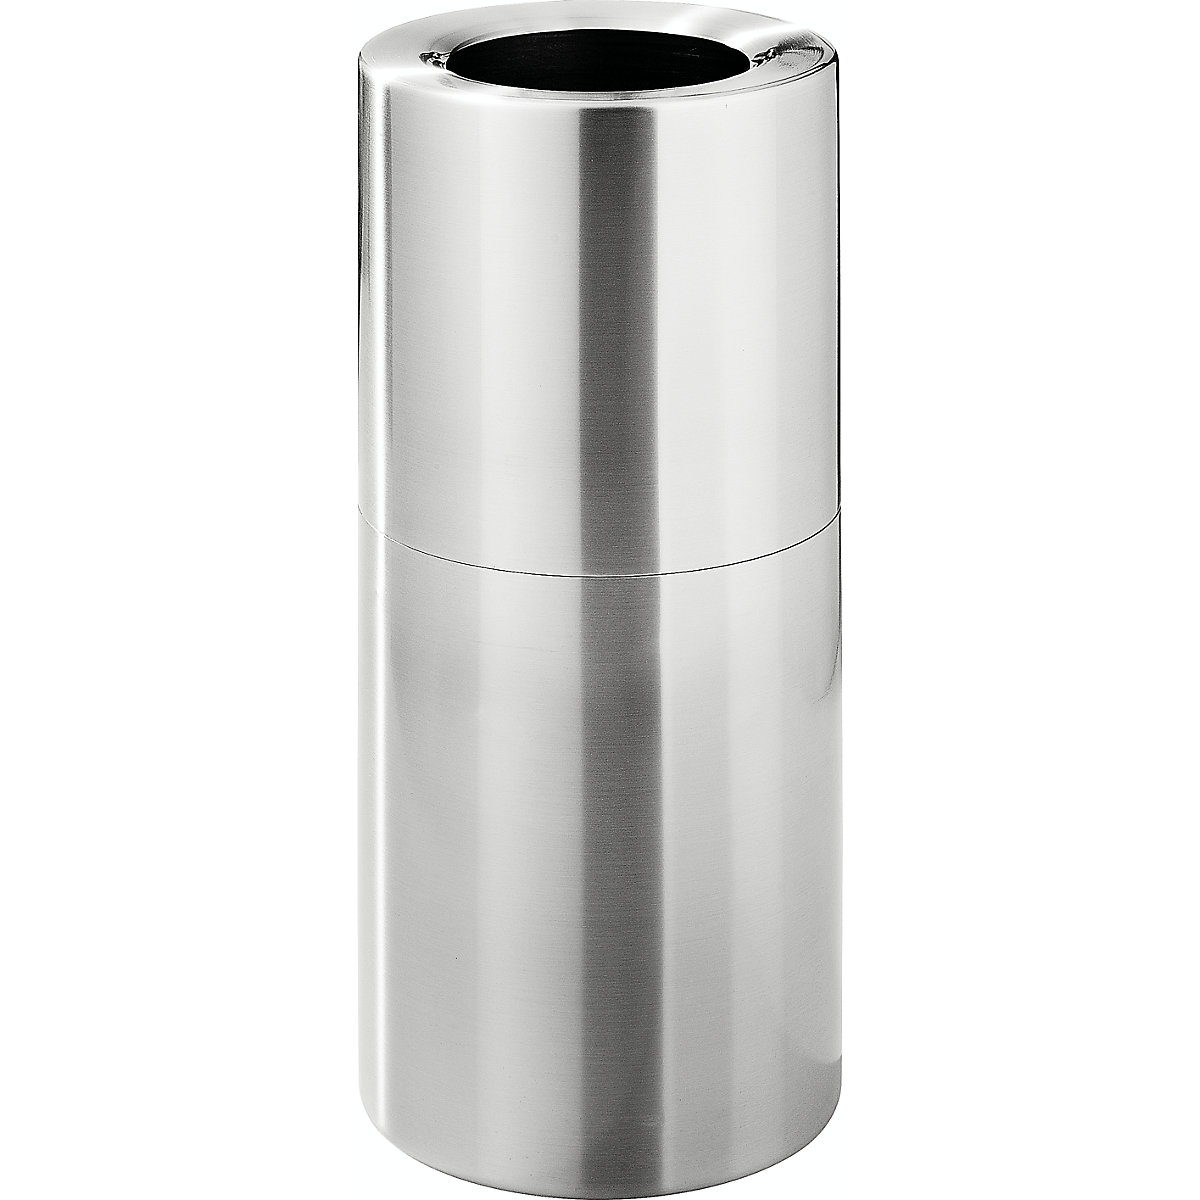 Aluminijski spremnik za otpad lijepog oblika